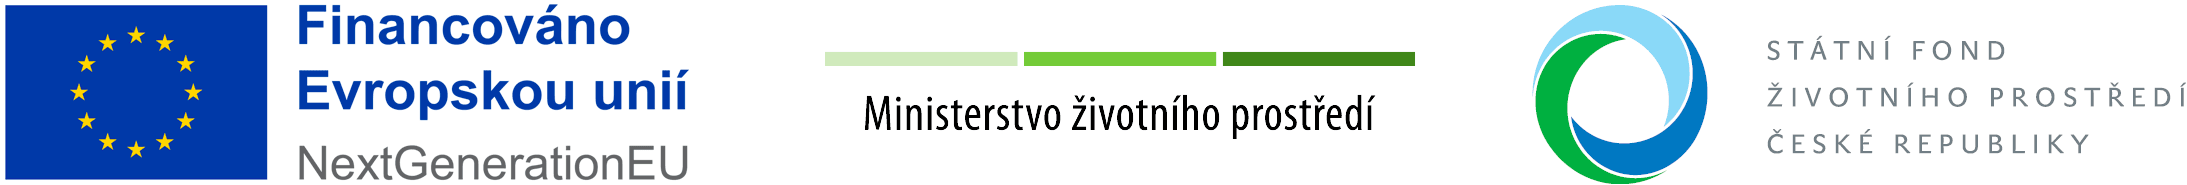 NextGenerationEU, Ministerstvo životního prostředi ČR, Státní fond životního prostředíí ČR